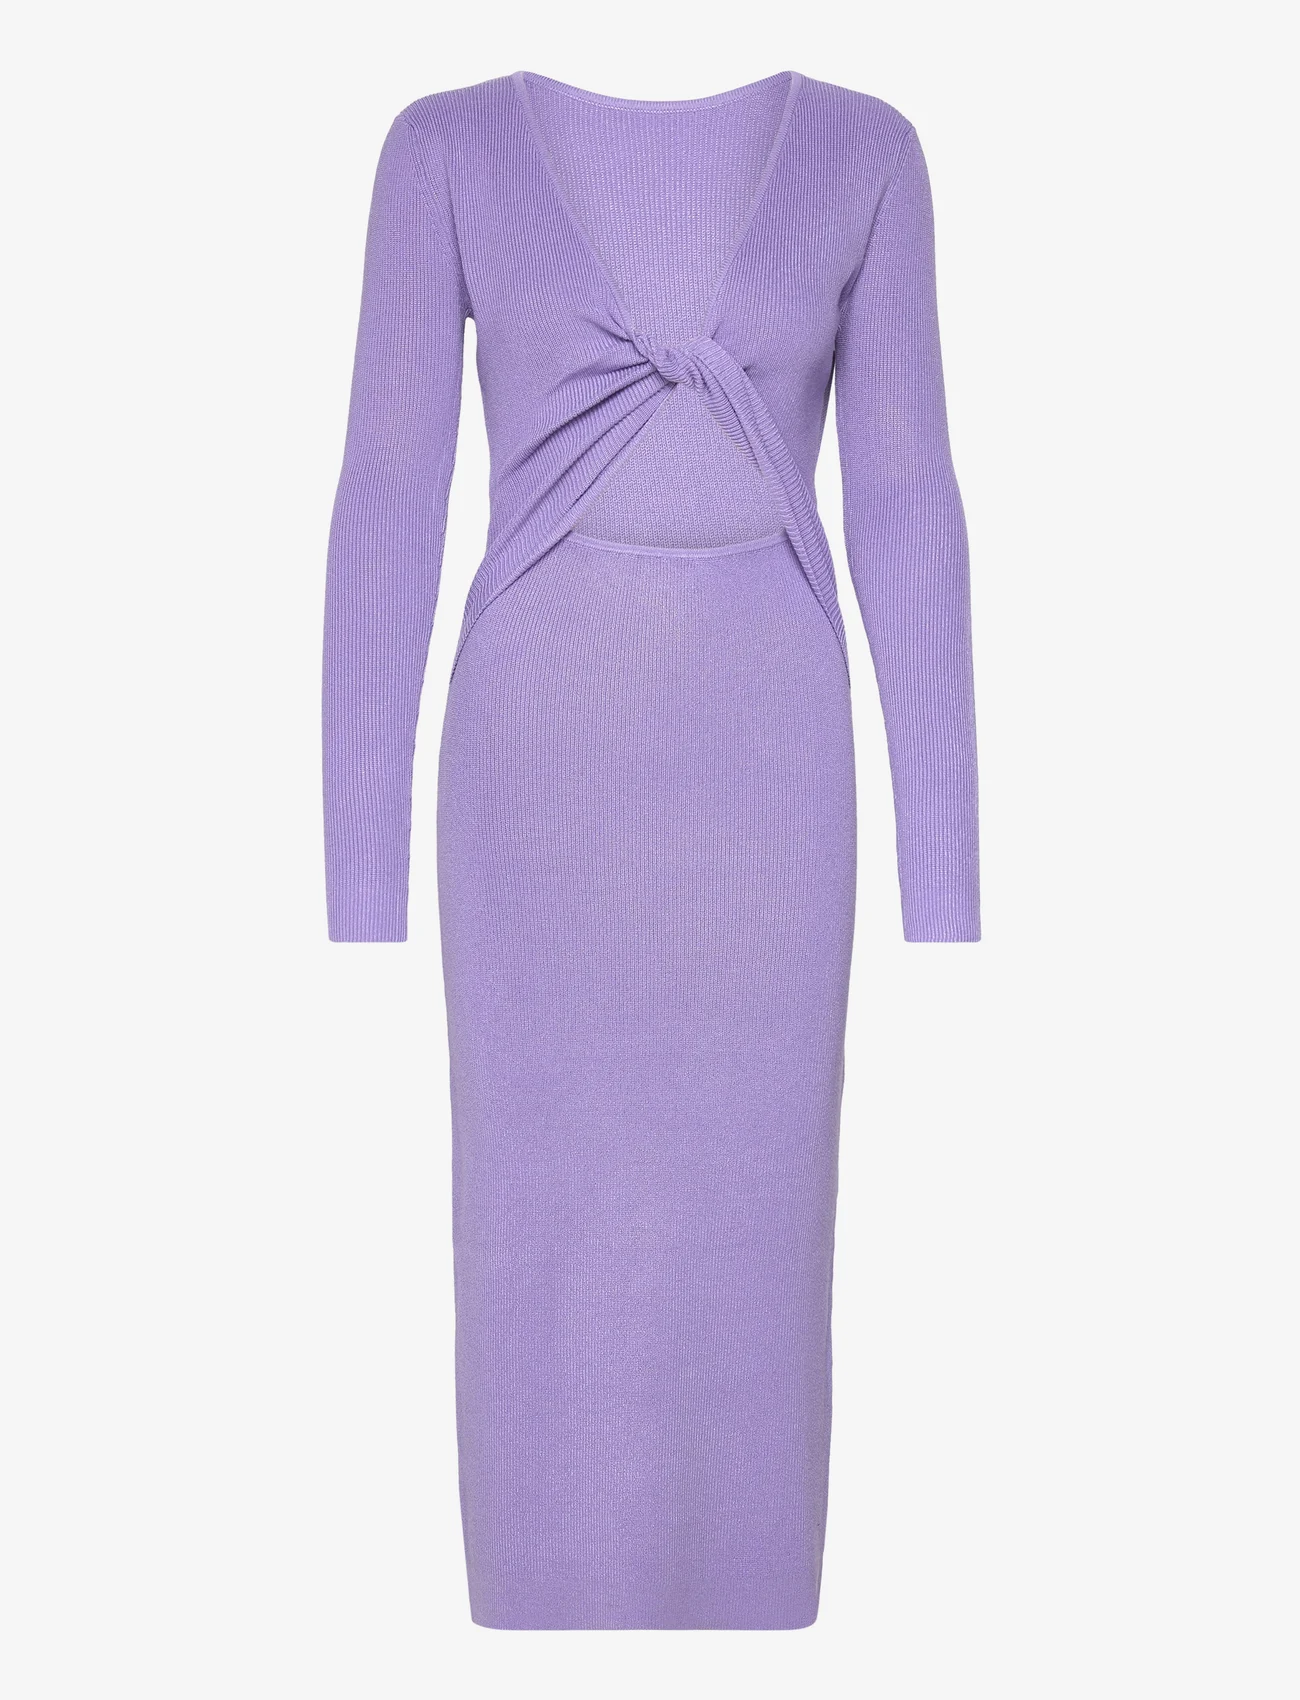 bzr - Lela Jenner dress - etuikleider - lavender - 0